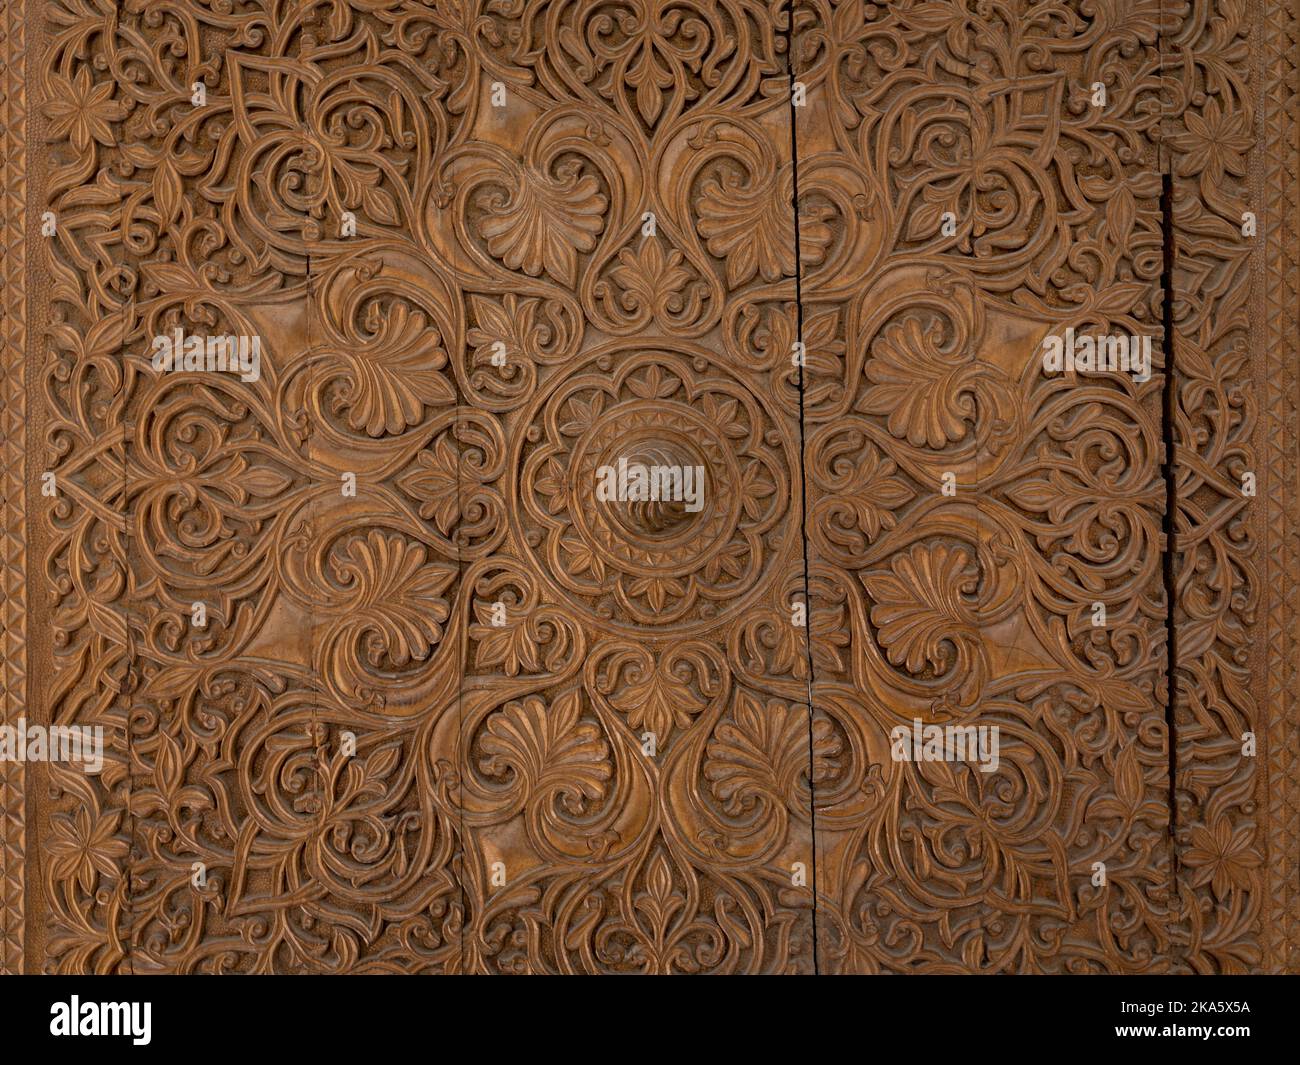 Vue rapprochée de la sculpture en bois islamique traditionnelle complexe de motifs floraux et géométriques sur l'ancienne porte, Isstalavshan, région de Sughd, Tadjikistan Banque D'Images